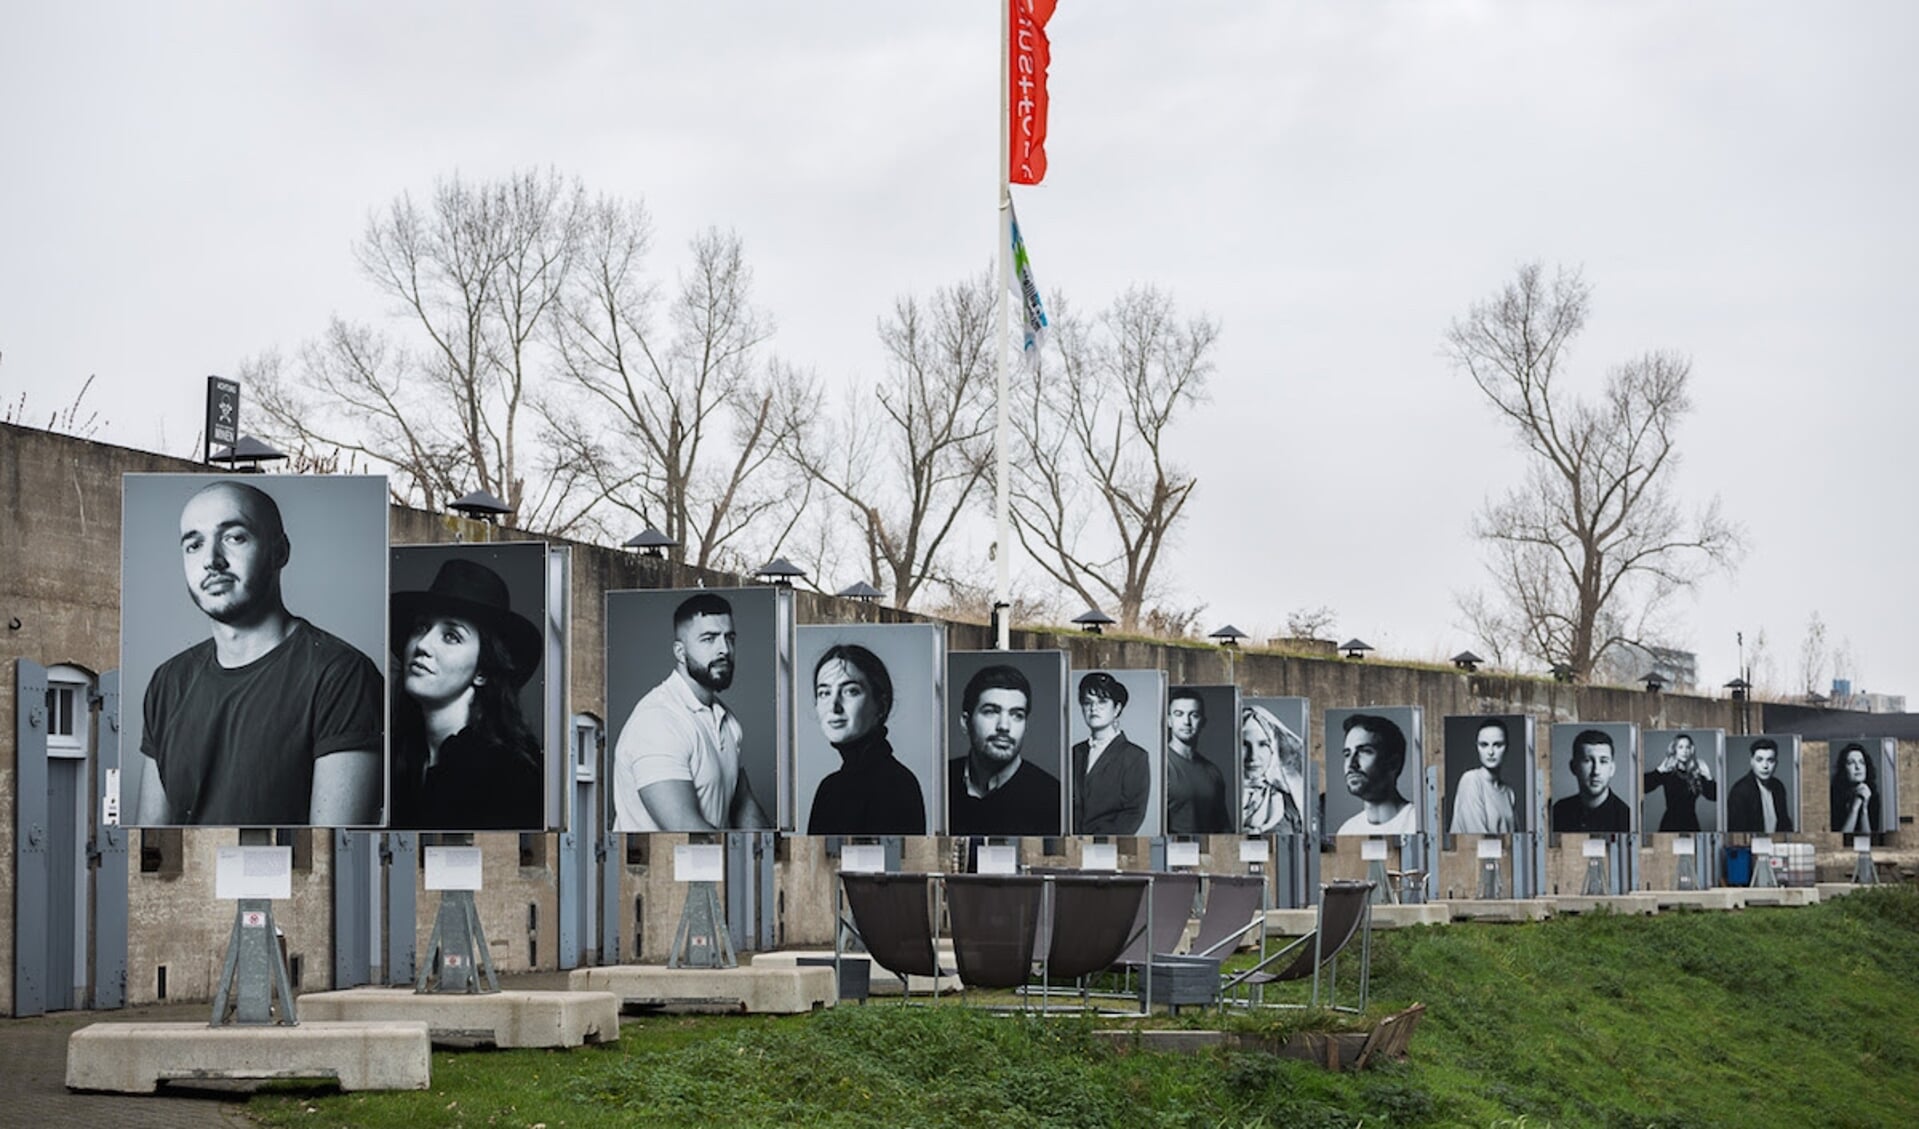 Via portretfoto’s van Robin de Puy wordt aandacht gevraagd voor de genocide in Bosnië